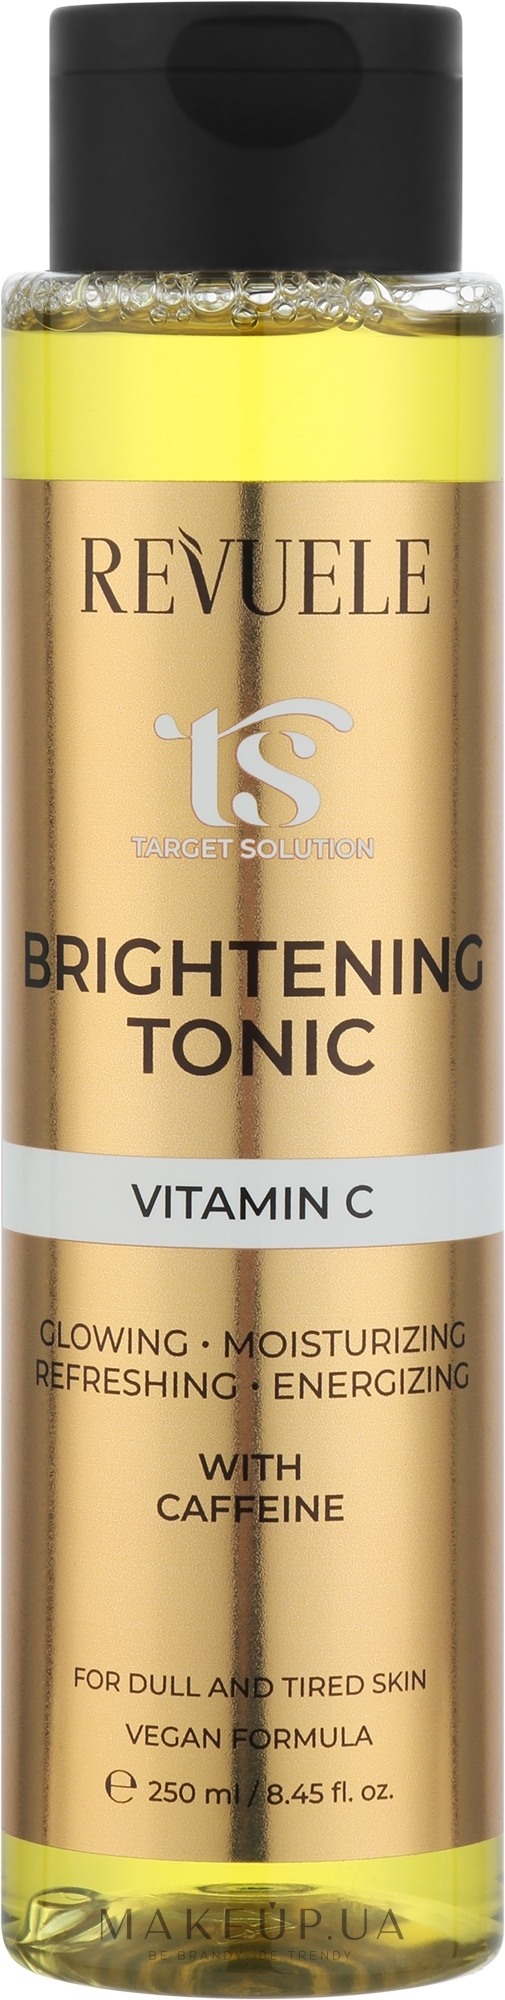 Освітлювальний тонік з вітаміном С - Revuele Target Solution Brightening Tonic — фото 250ml